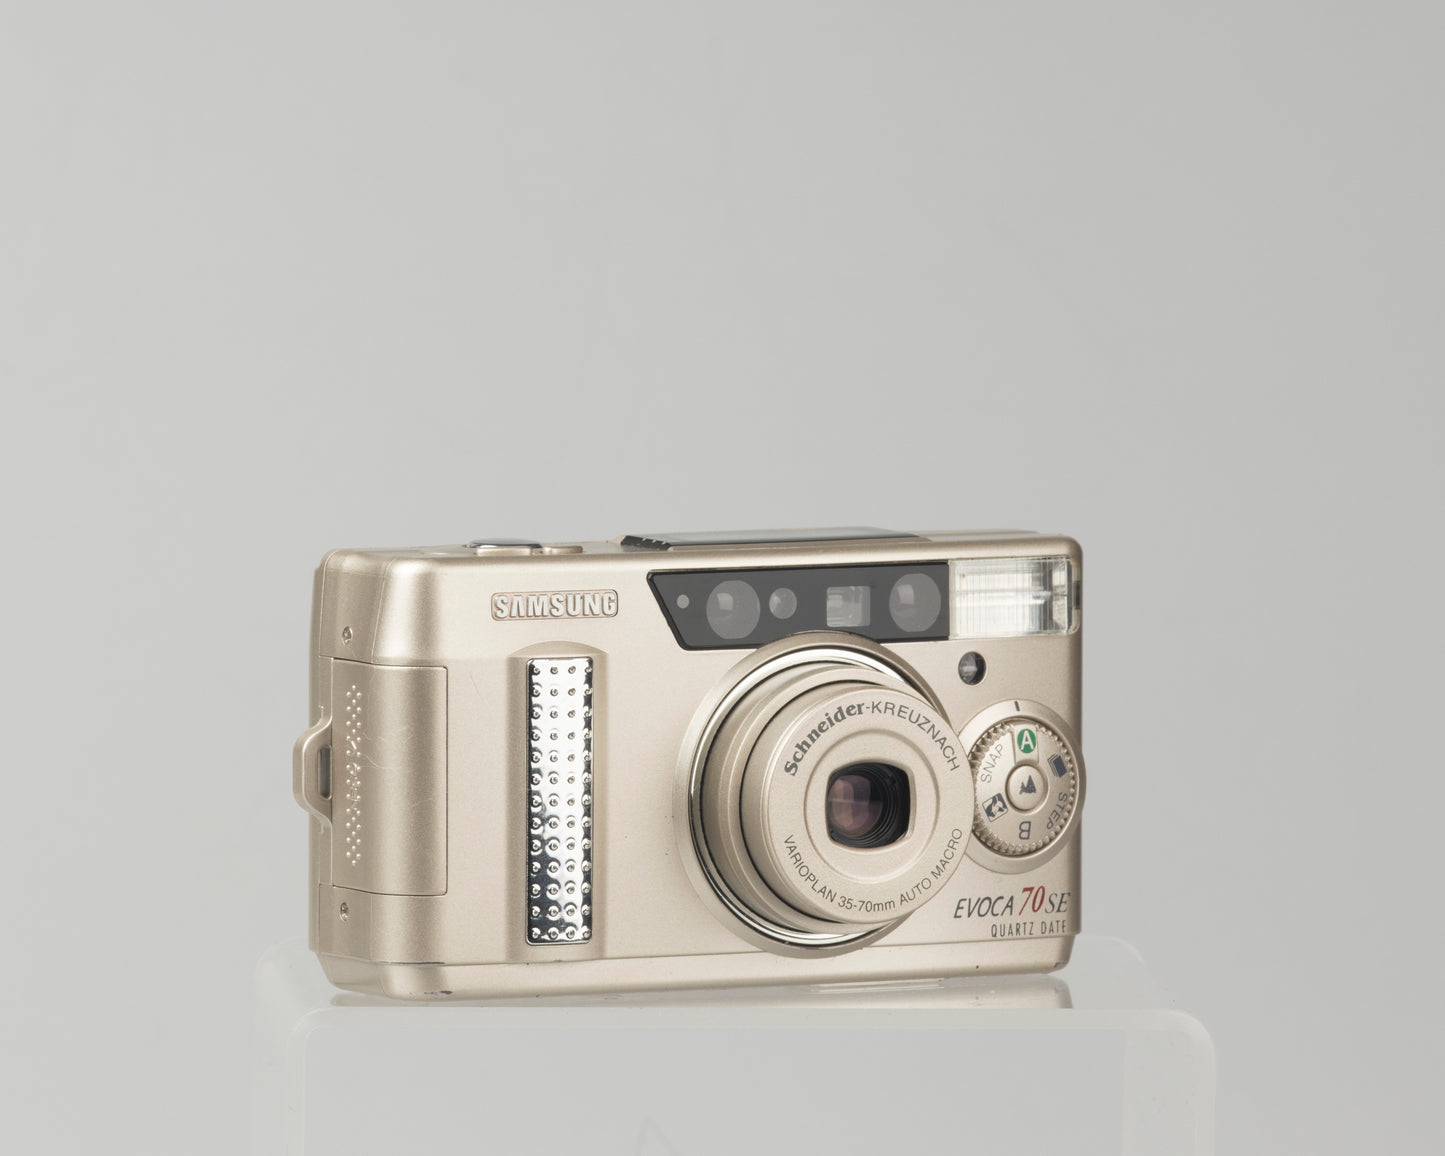 The Samsung Evoca 70 SE (the same cameras the Samsung Vega 77i and the Rollei Prego 70); a good quality ultra-portable 35mm cameras with a Schneider-Kreuznach Varioplan lens 